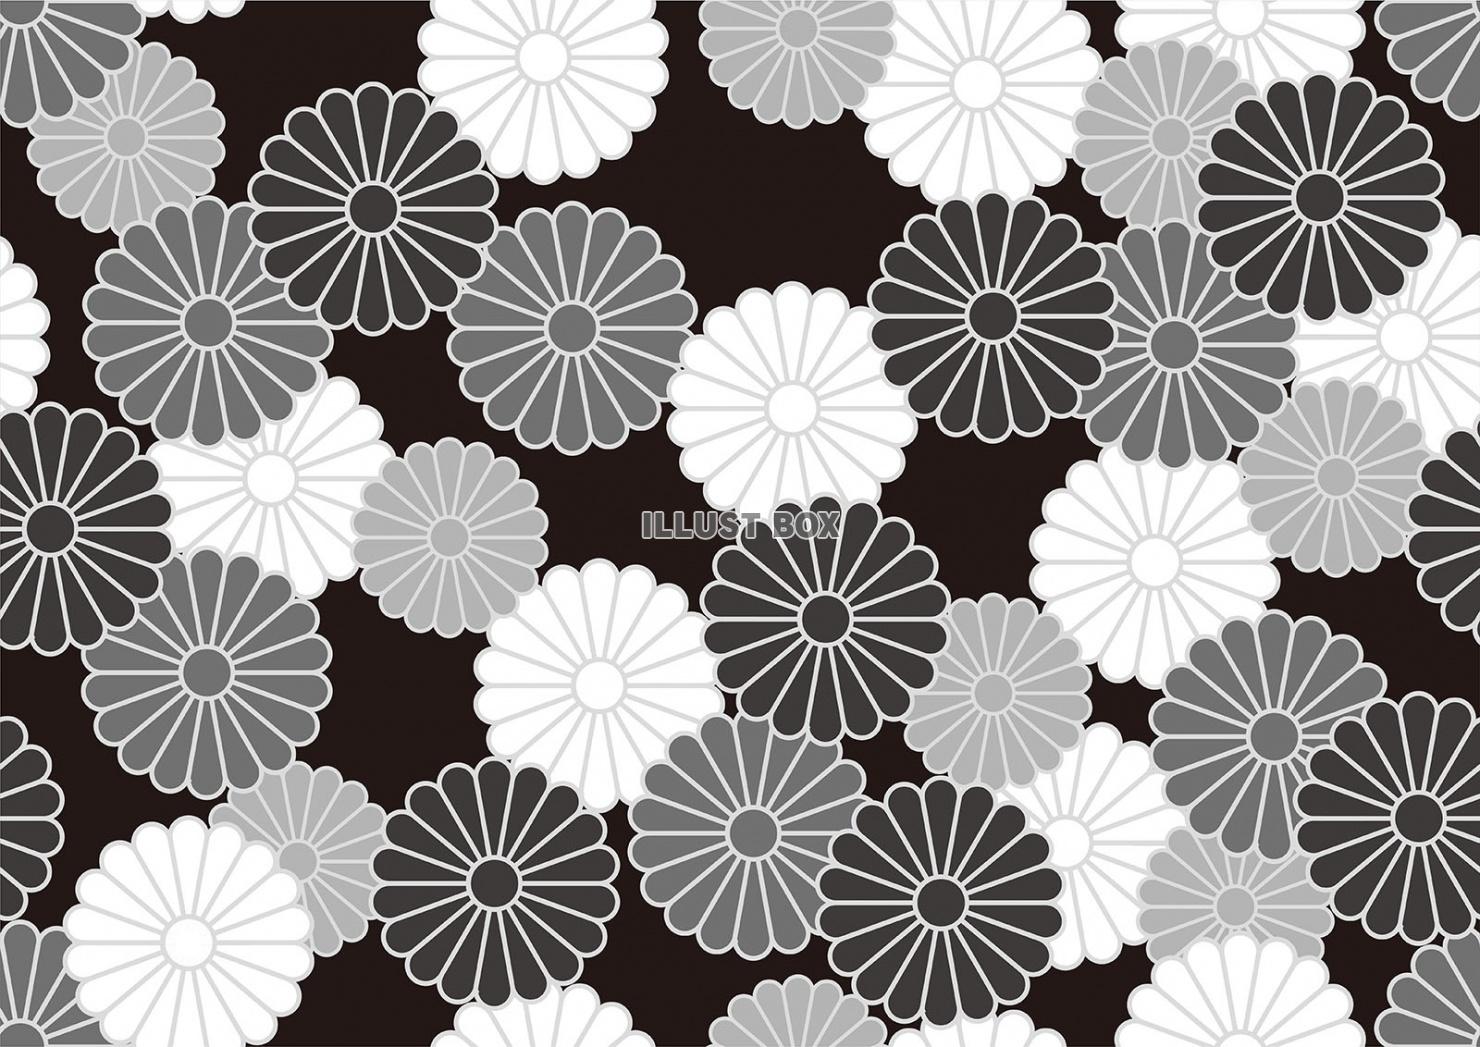 縦横両方向にシームレスなモノクロームの和柄パターン「菊紋」